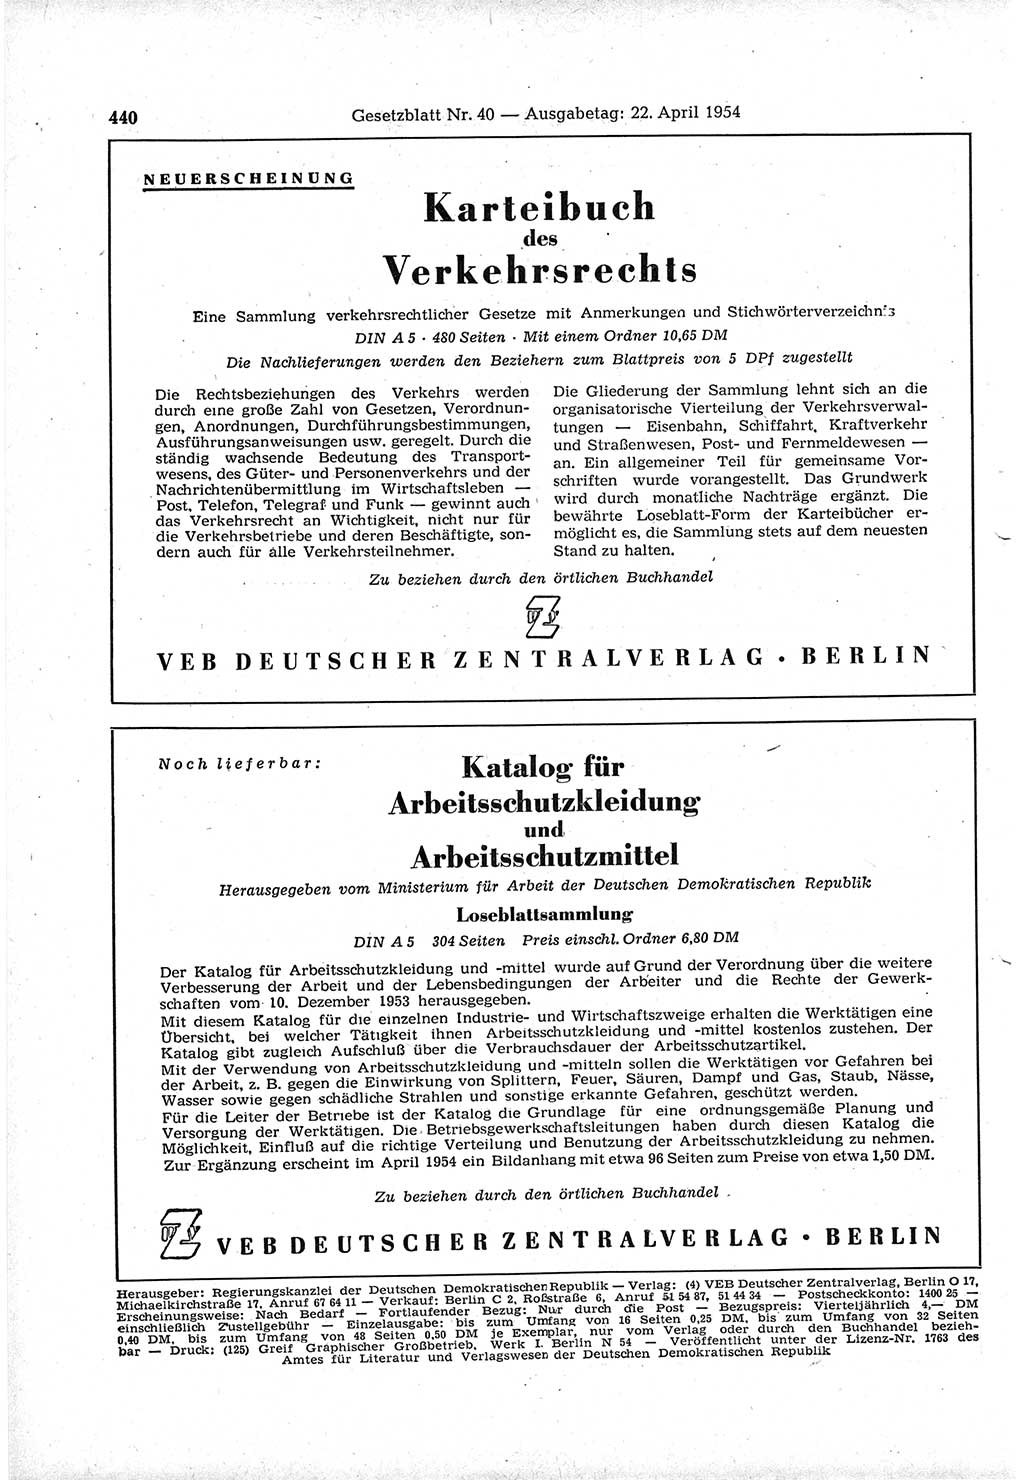 Gesetzblatt (GBl.) der Deutschen Demokratischen Republik (DDR) 1954, Seite 440 (GBl. DDR 1954, S. 440)